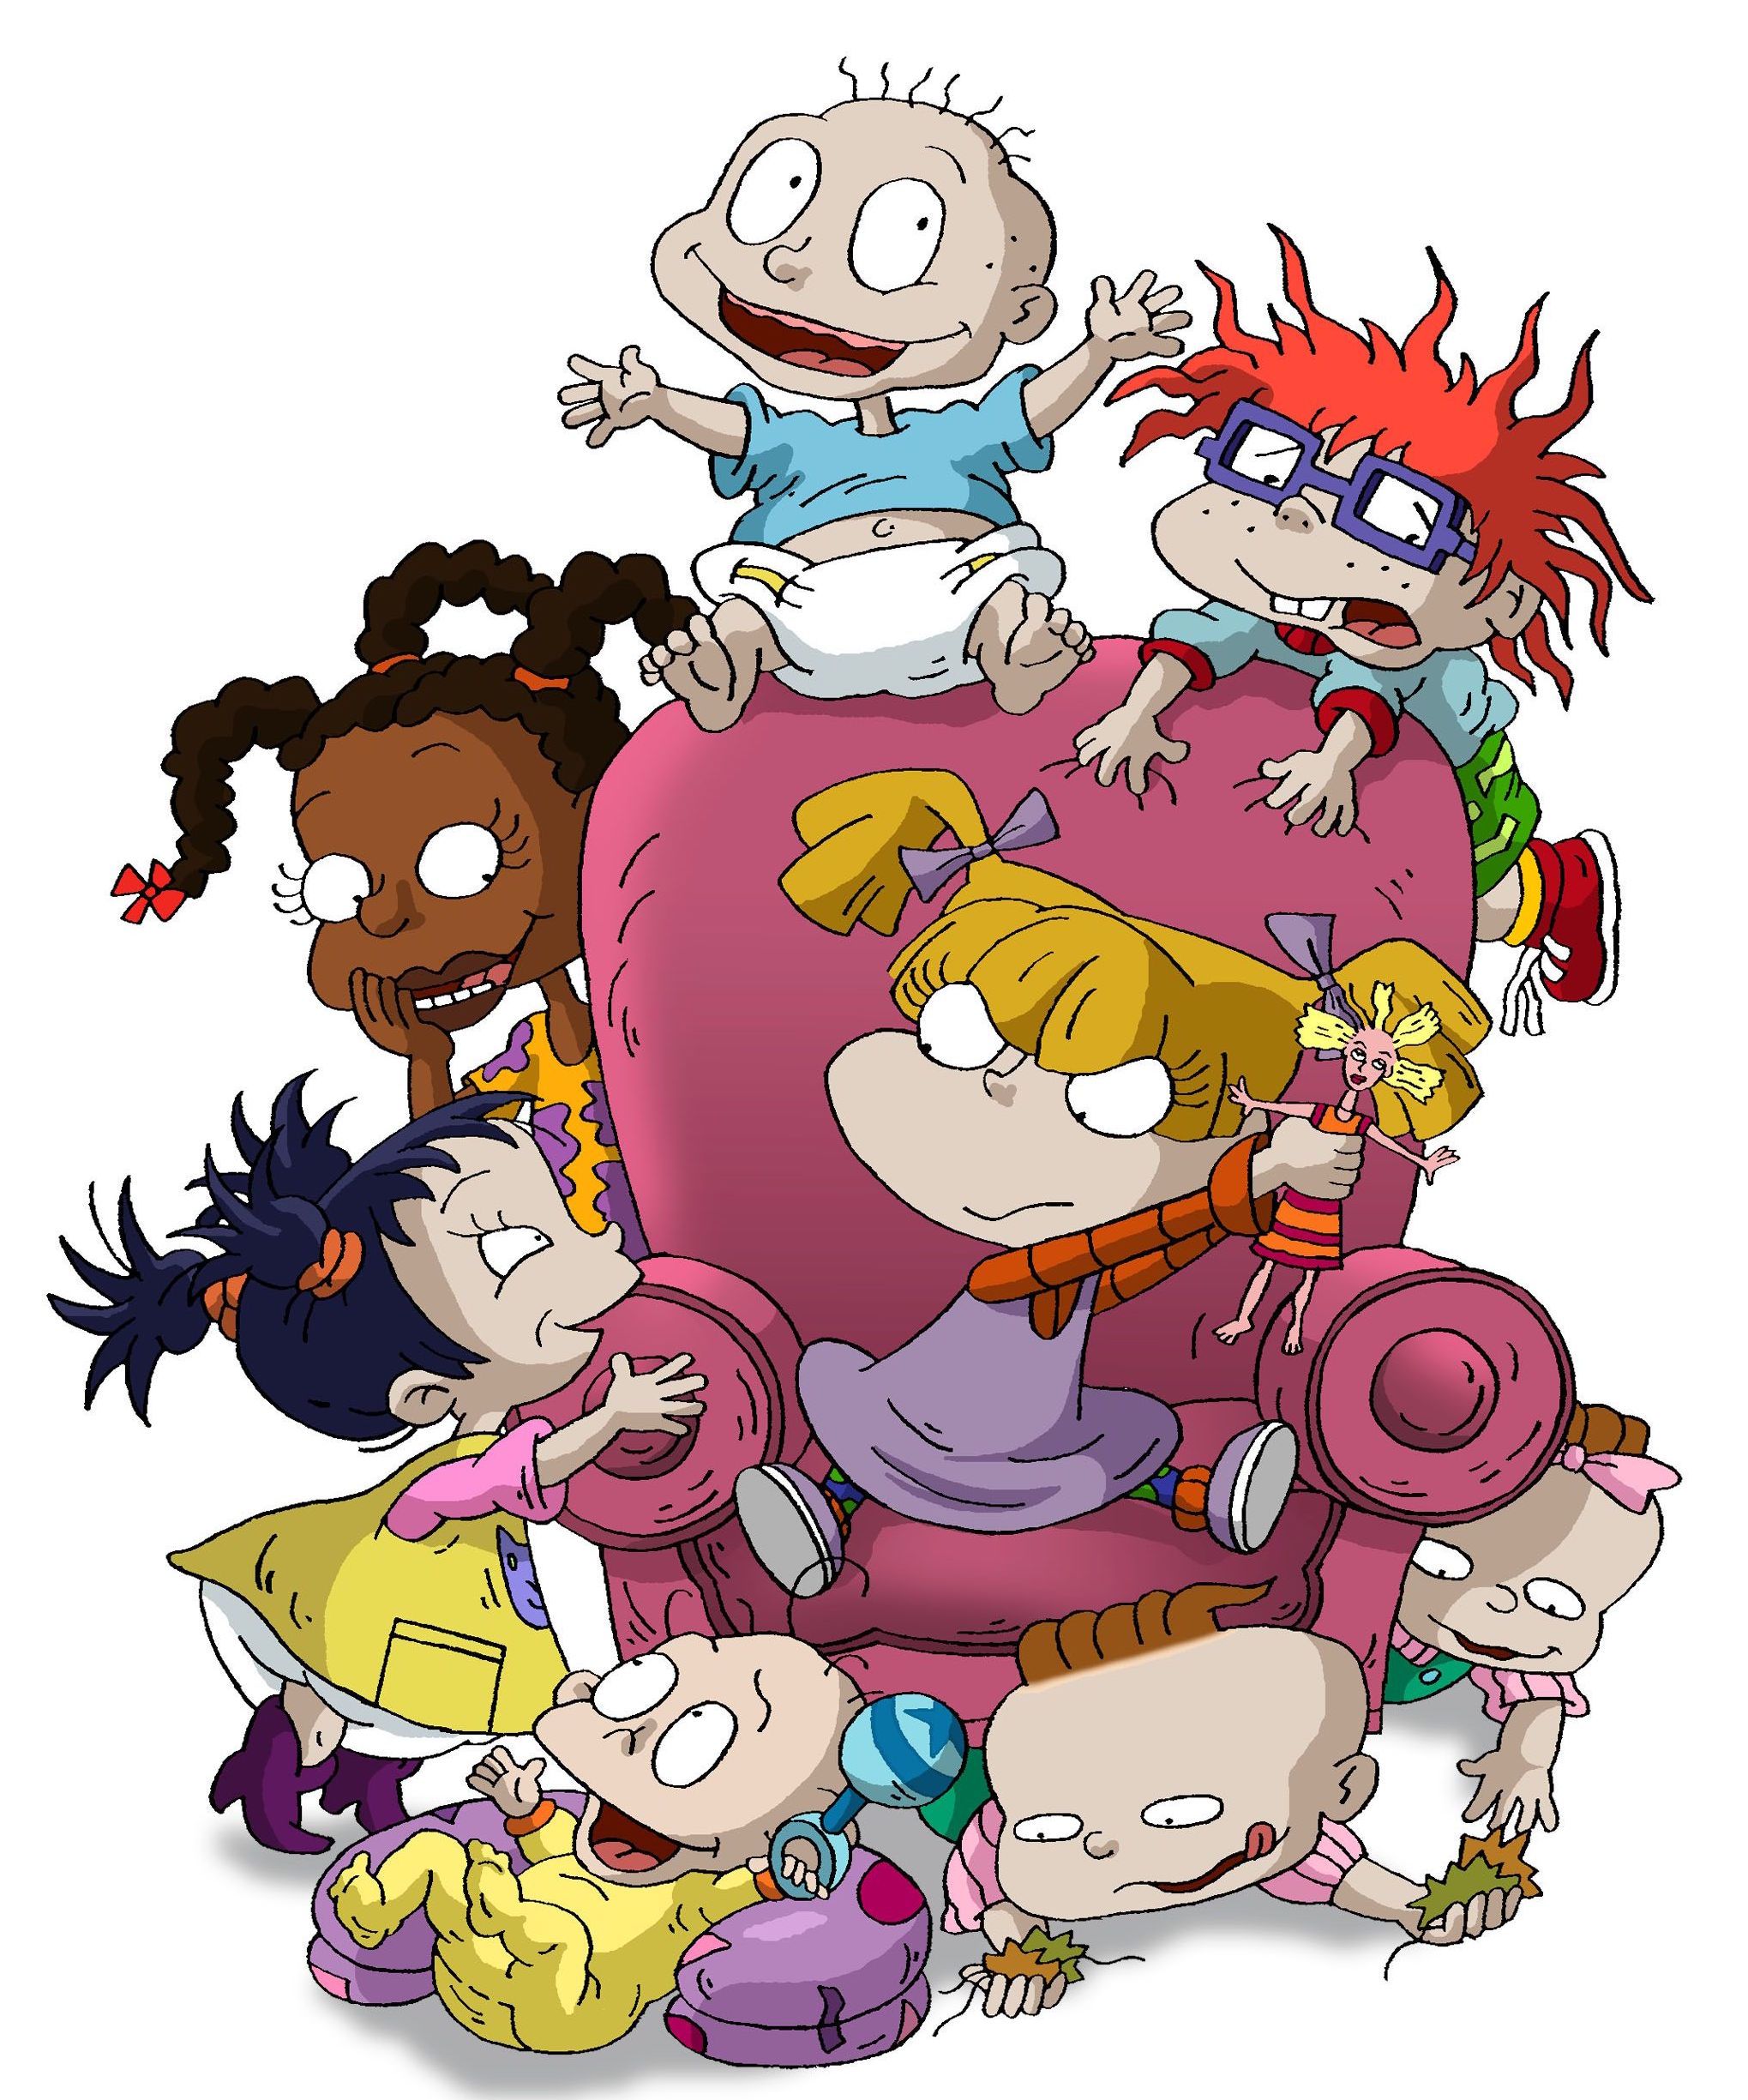 20 Iconic Nickelodeon Cartoons - The Best Nickelodeon Cartoons 2000s